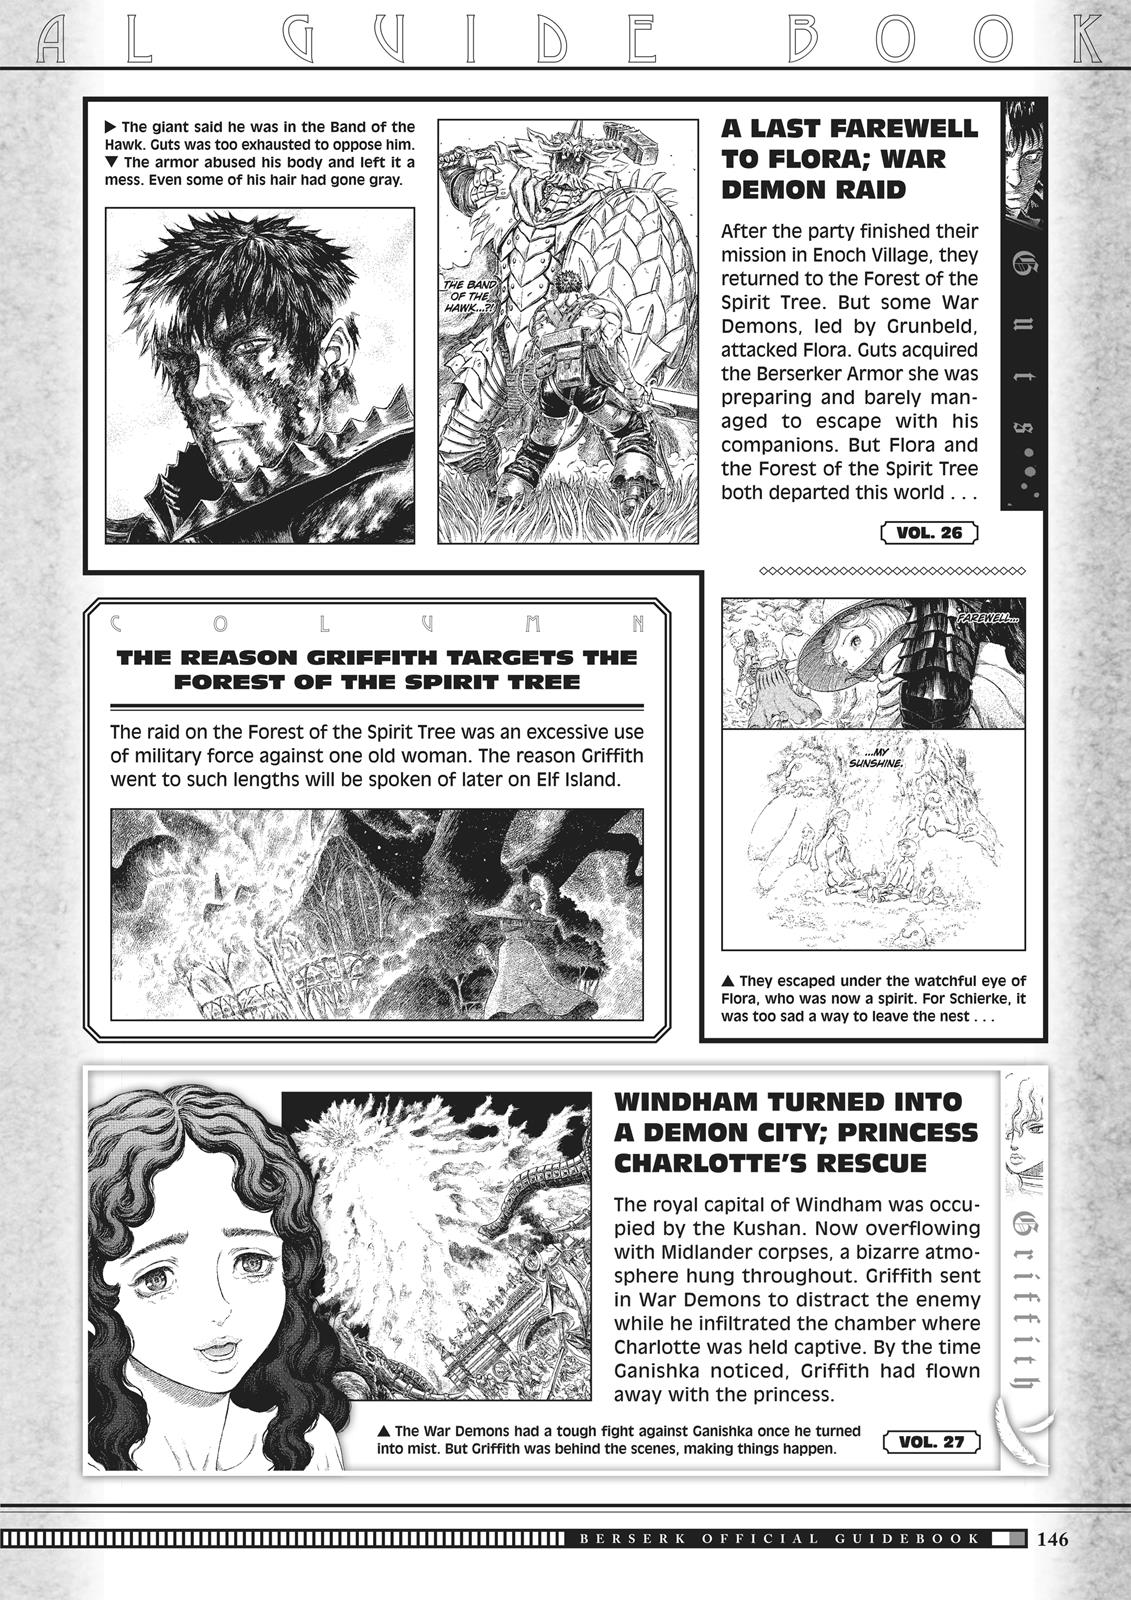 Berserk Manga Chapter 350.5 image 144